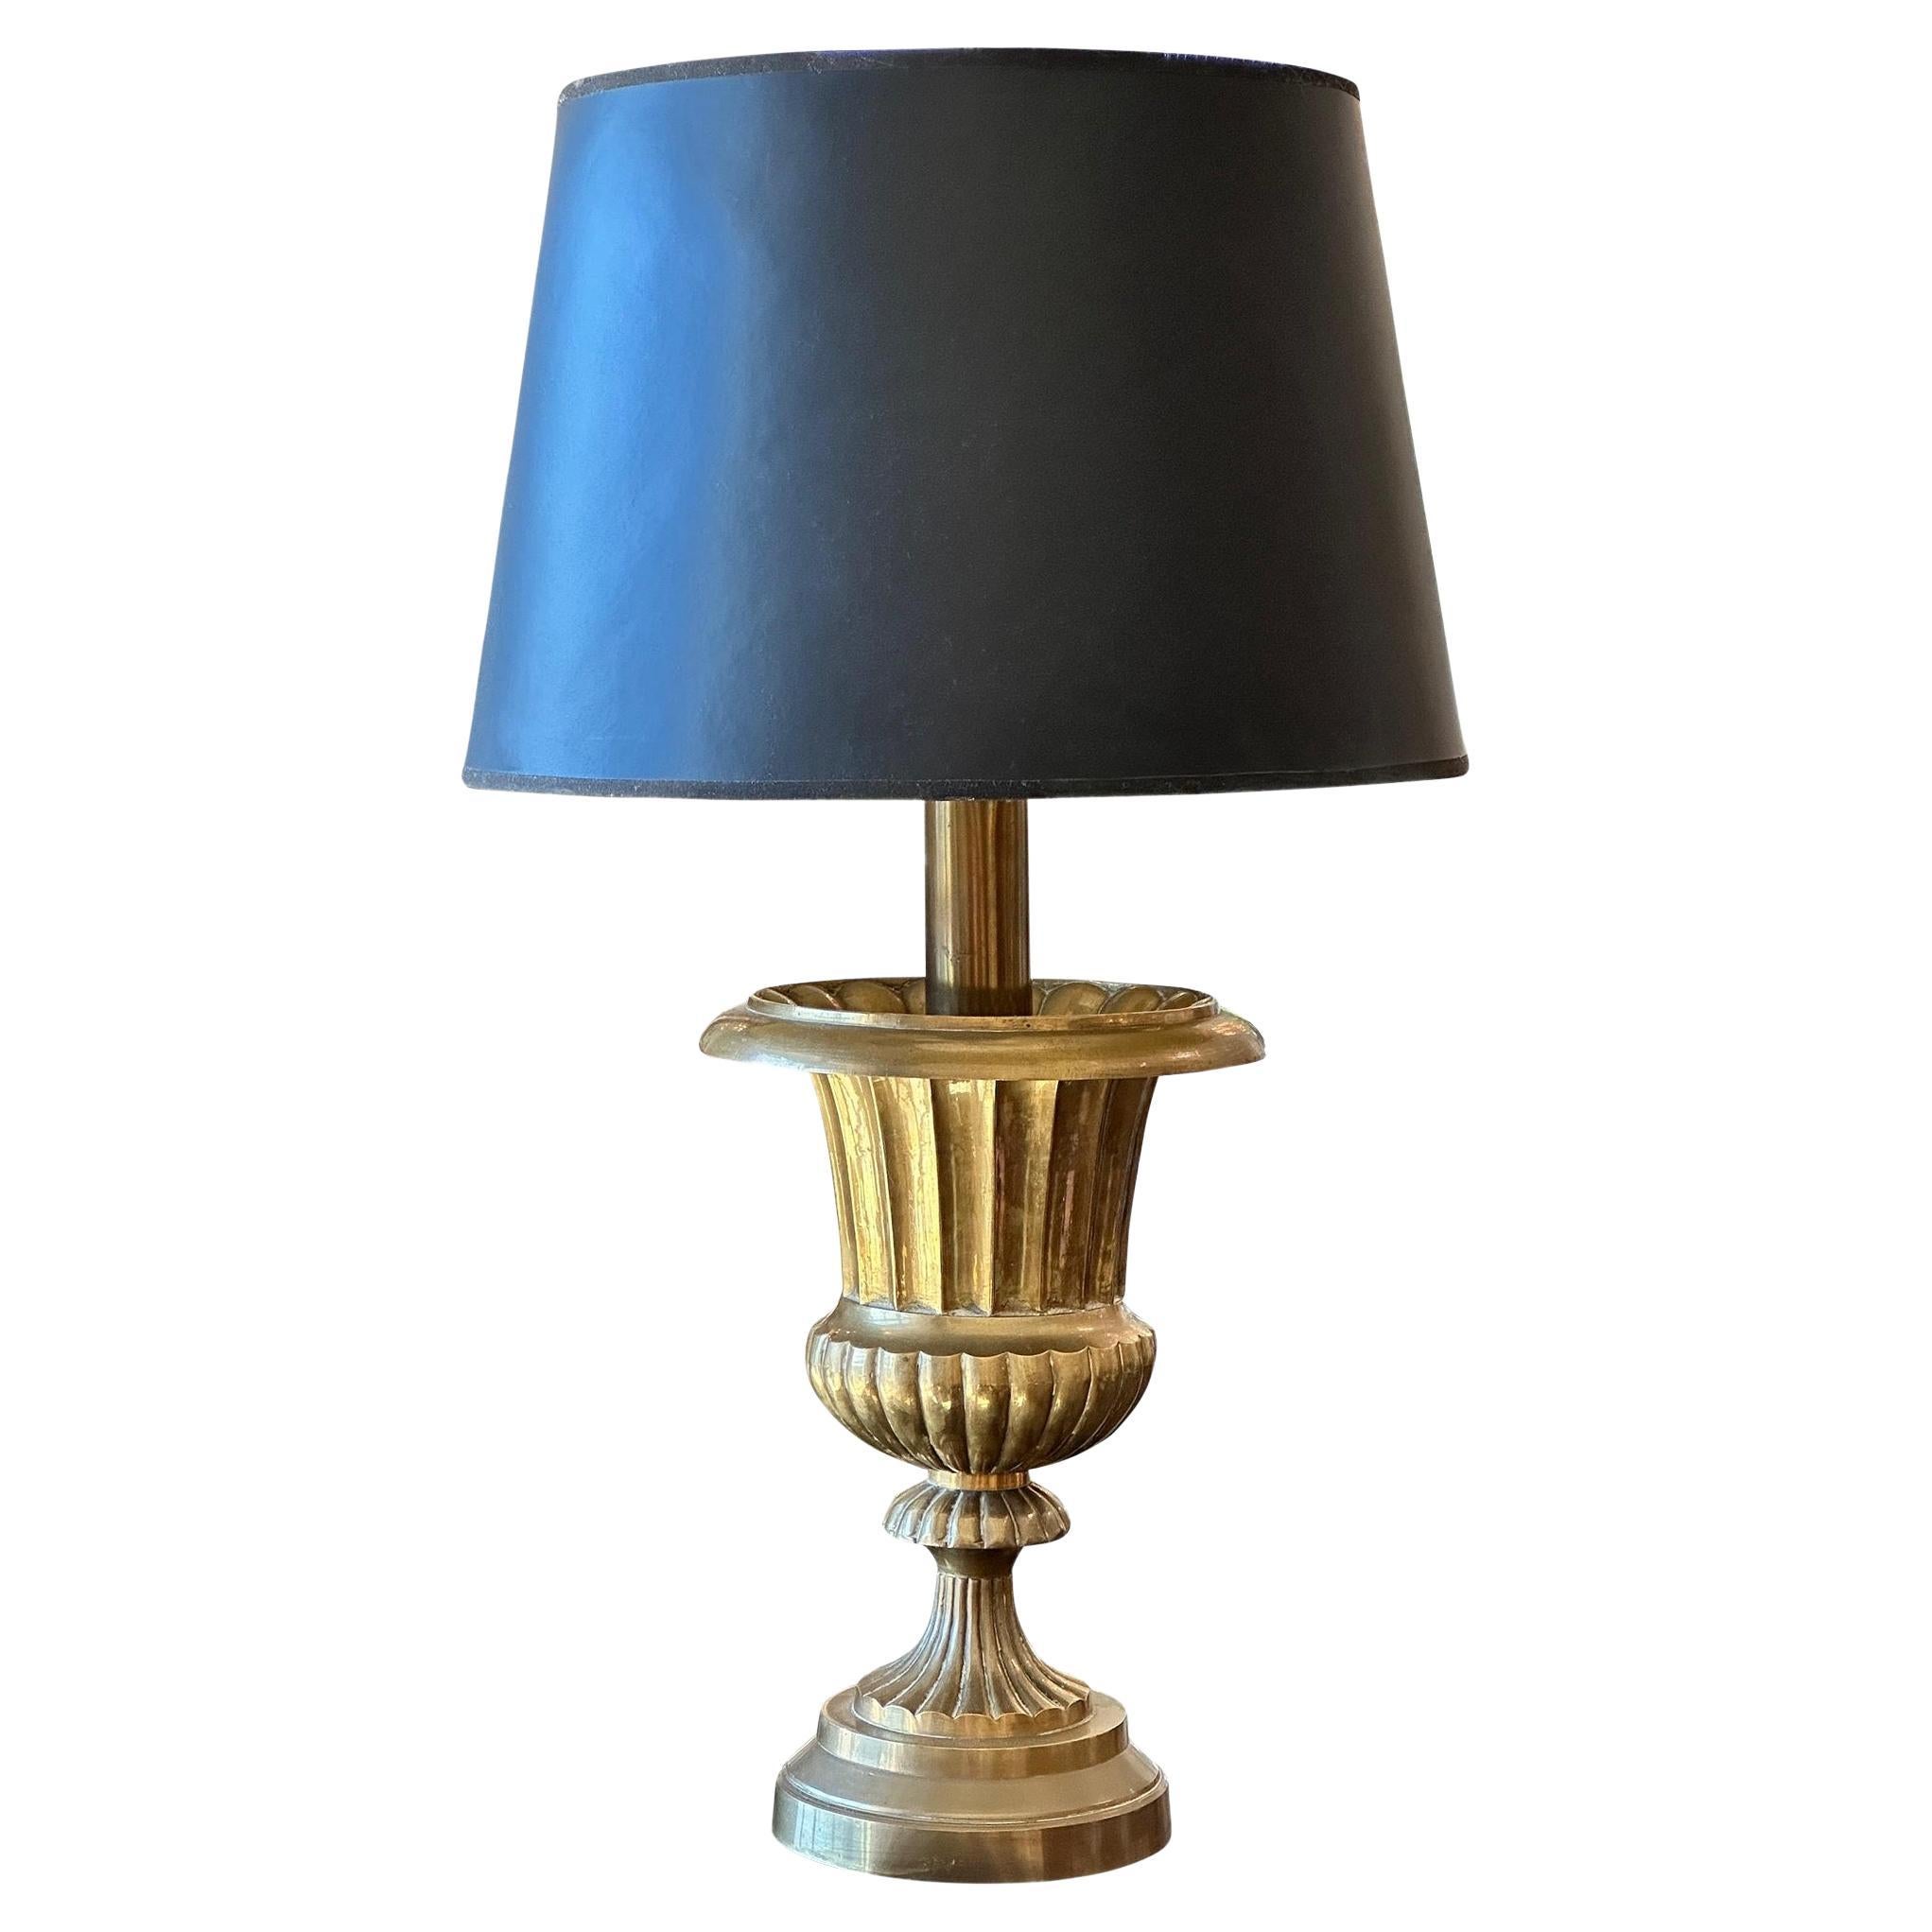 Vintage Mitte des 20. Jahrhunderts Messing Urne Lampe